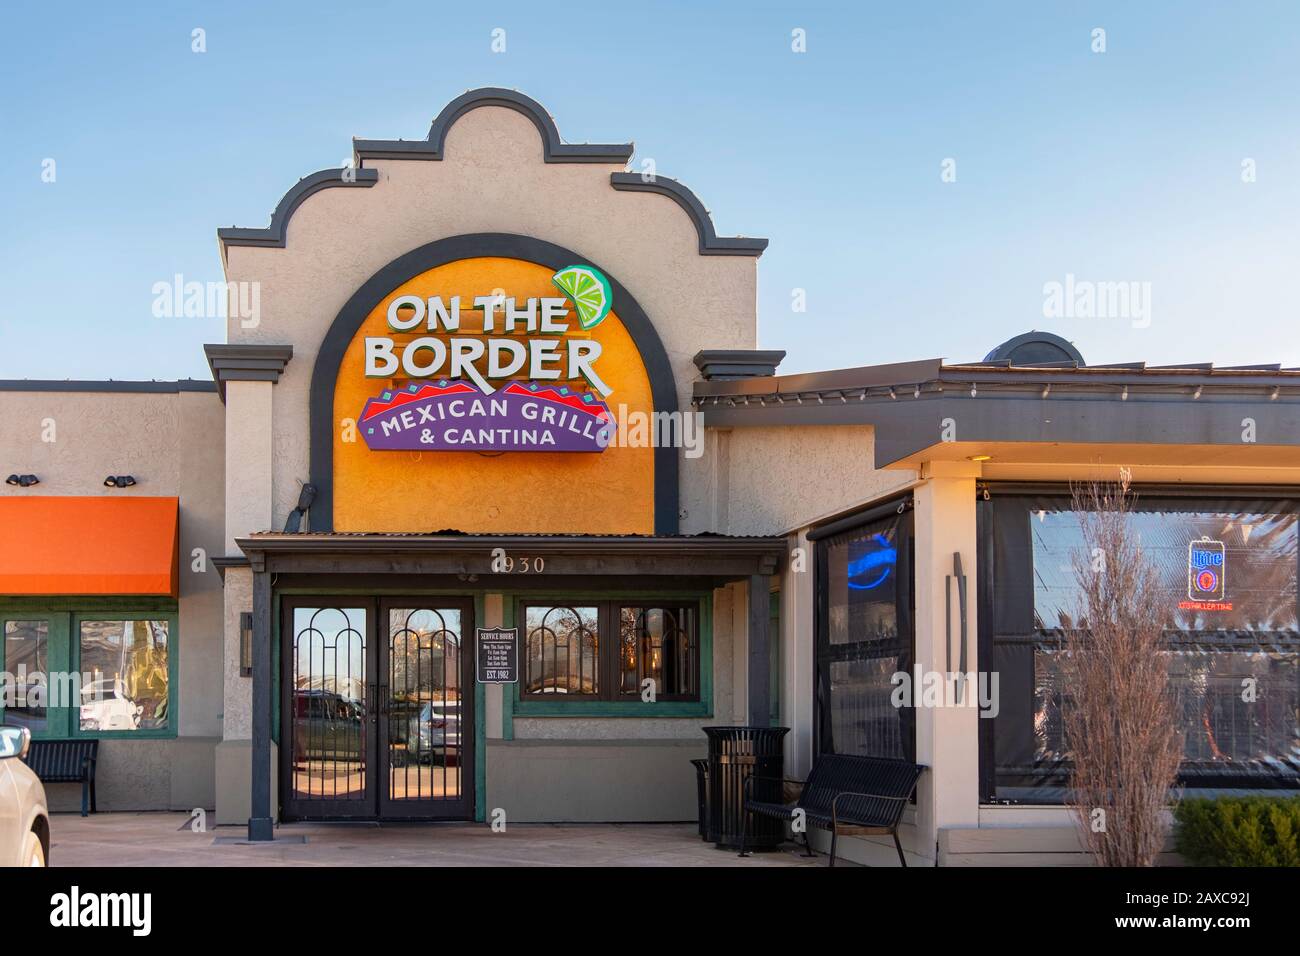 Sur la frontière cuisine mexicaine Grill & Cantina entrée et extérieur de la boutique. Bradley Fair Mall, Wichita, Kansas, États-Unis. Banque D'Images